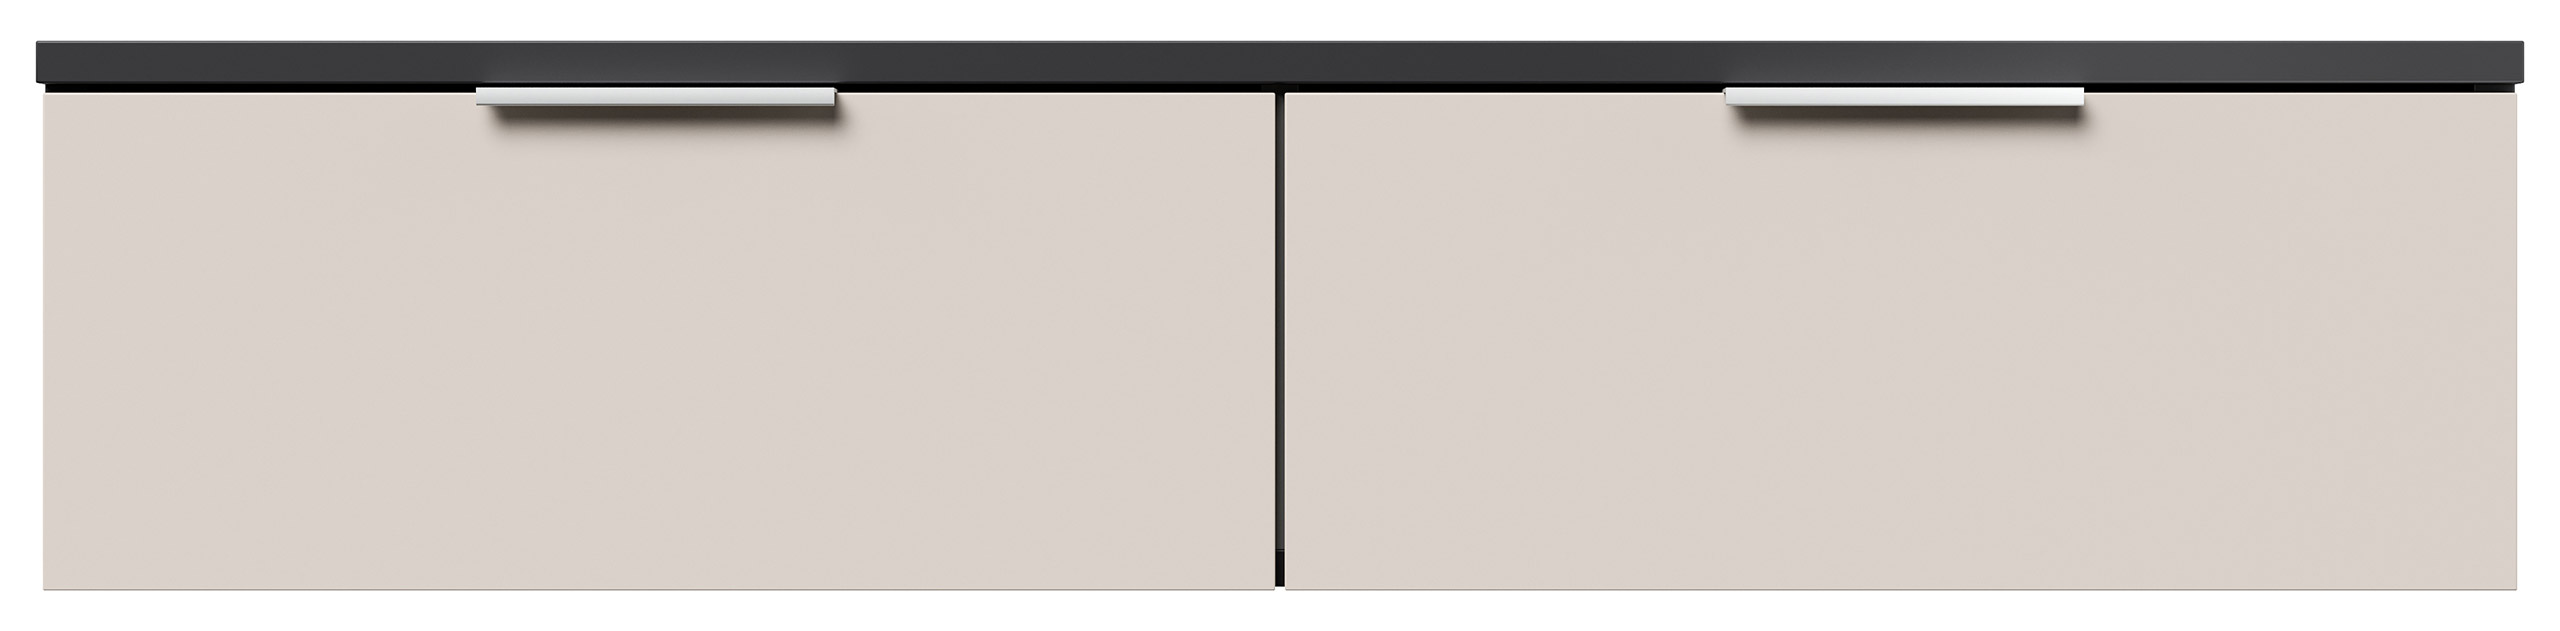 Design Hängekonsole Sideboard Urban Slimline 2 Softeinzüge lackiert Creme-Grafit